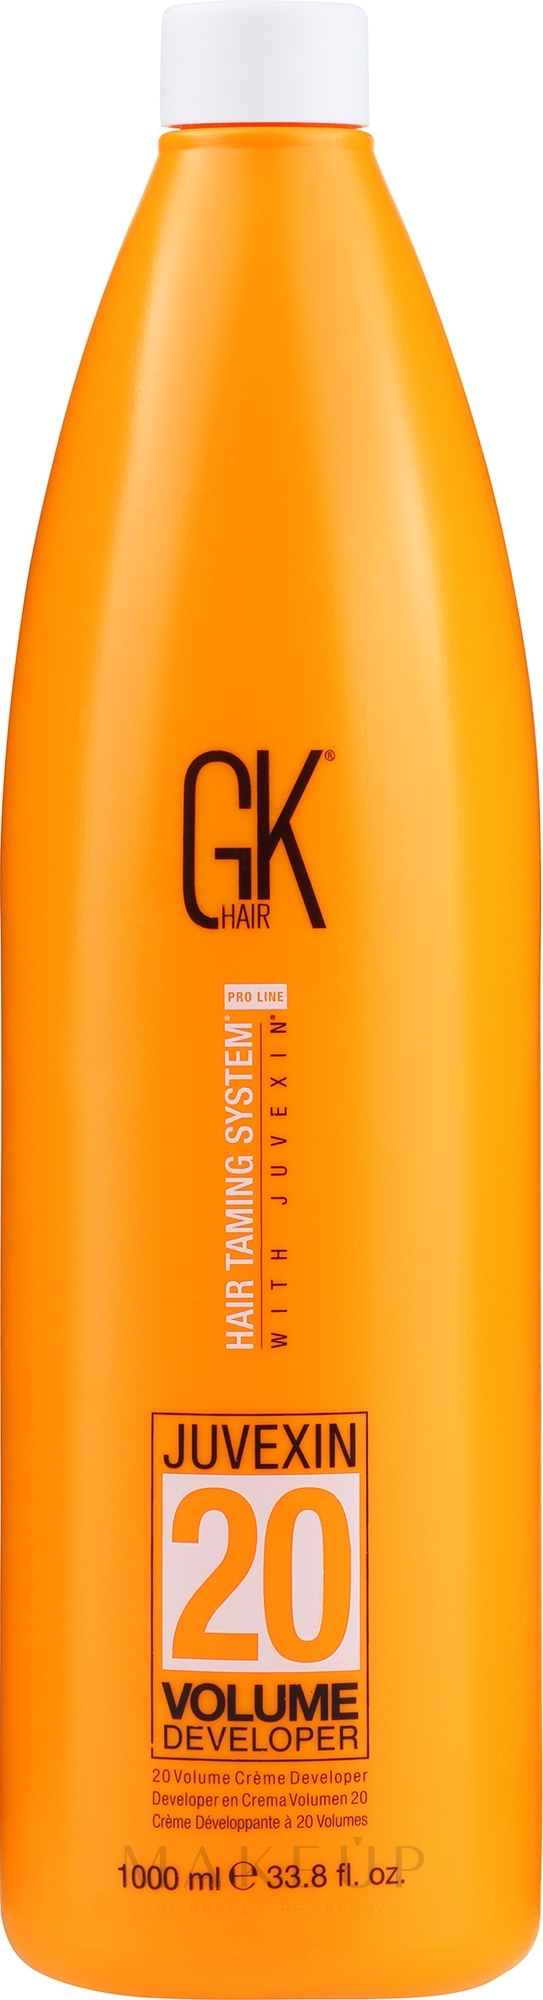 Oxidationsmittel 6% - GKhair Cream Developer 20 Volume 6% — Foto 1000 ml